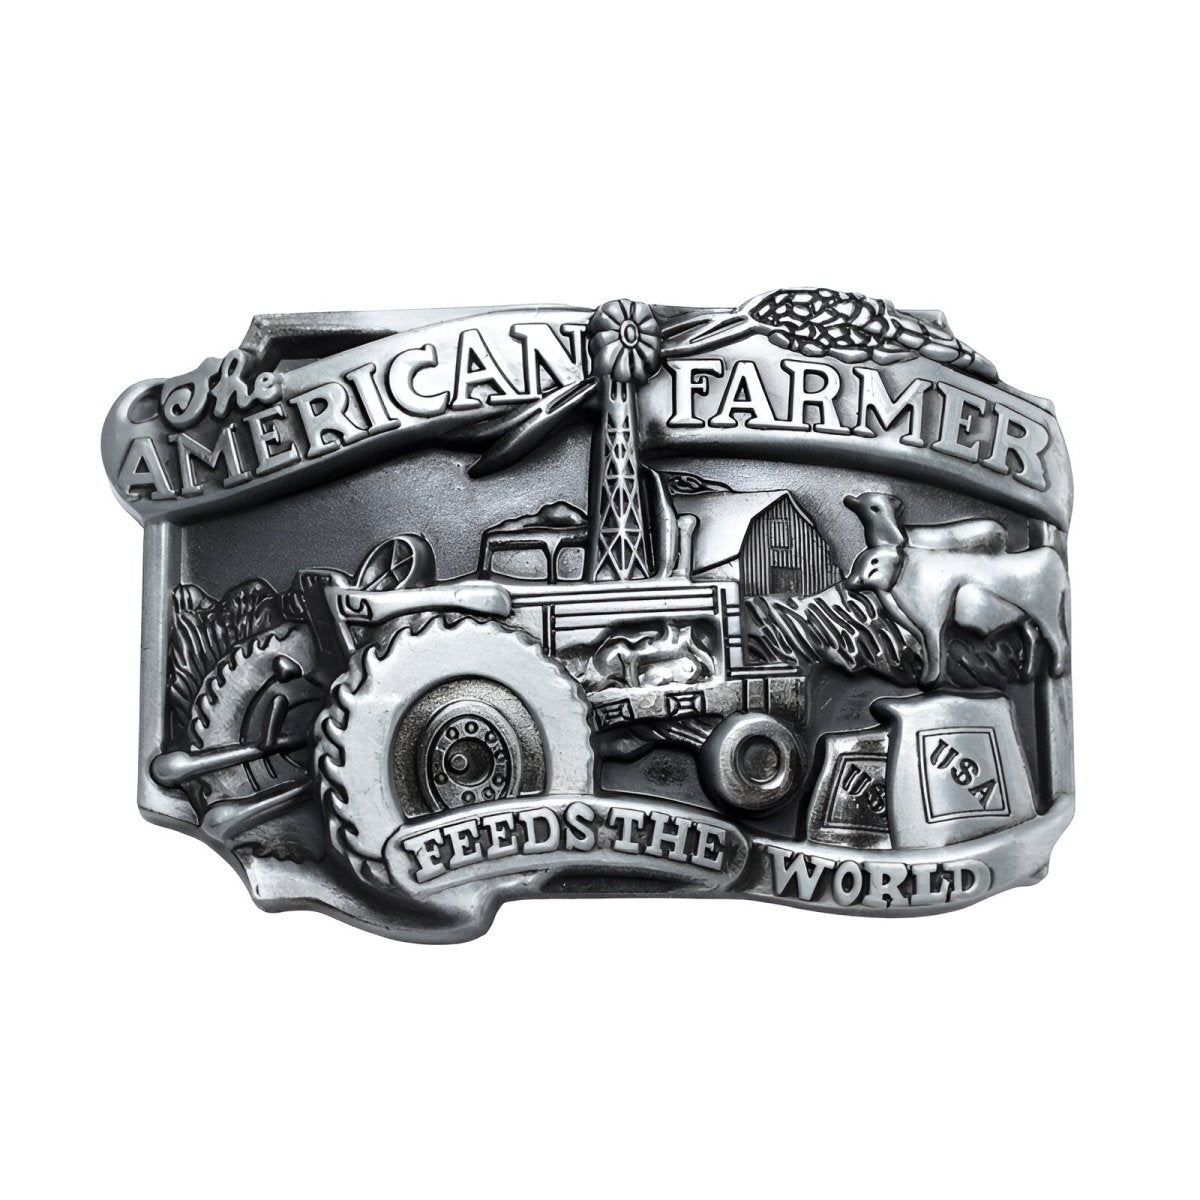 Boucle de ceinture Américaine, "The American Farmer", modèle Rowan - La Boutique de la Ceinture